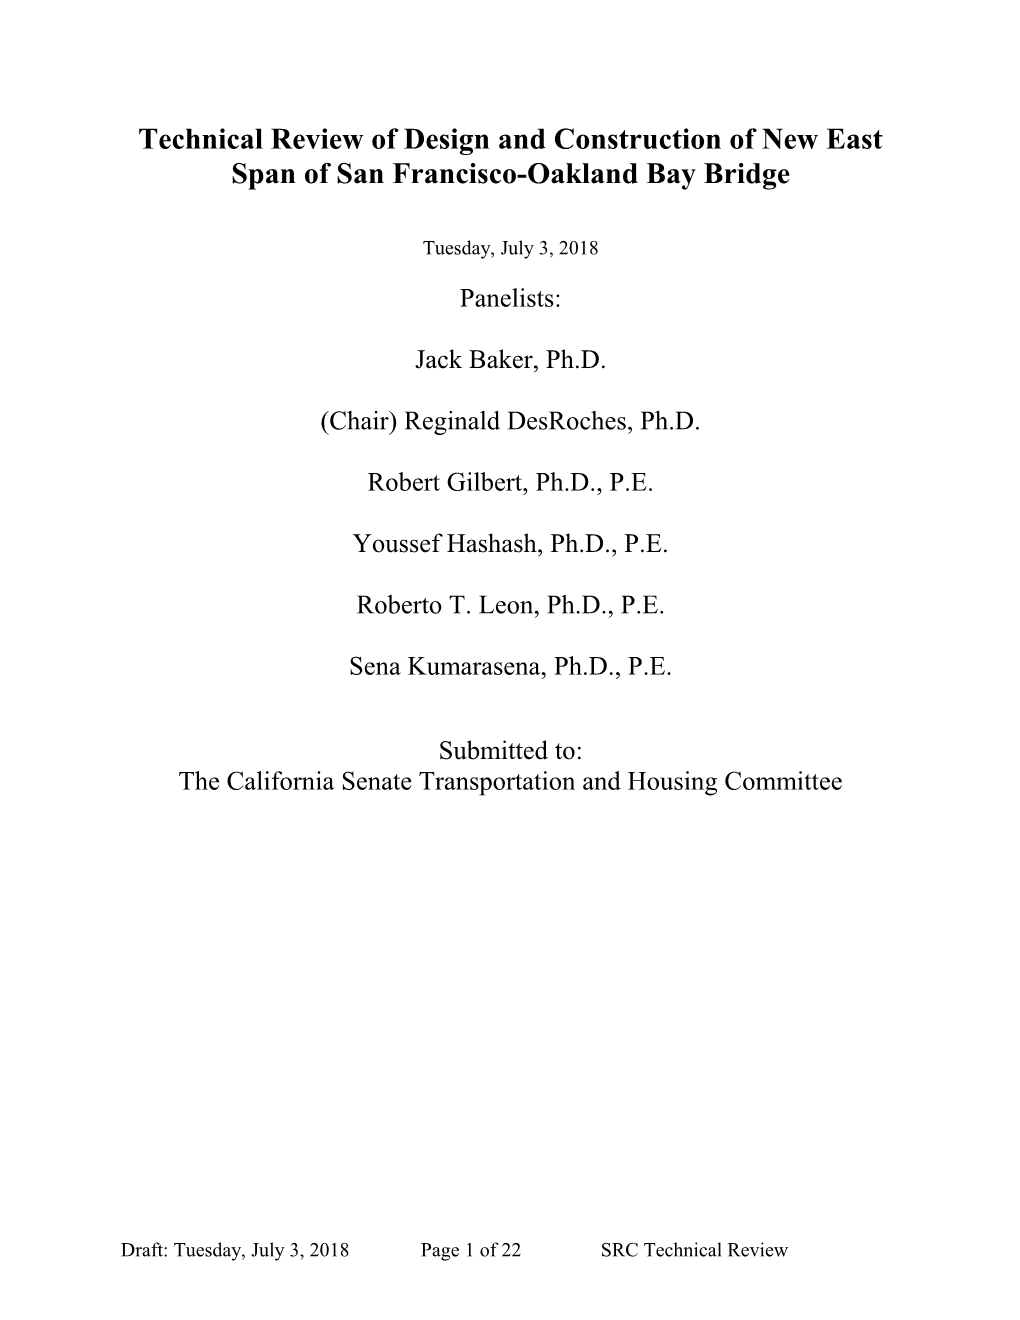 Bay Bridge Panel Report - DRAFT 7-6 RD